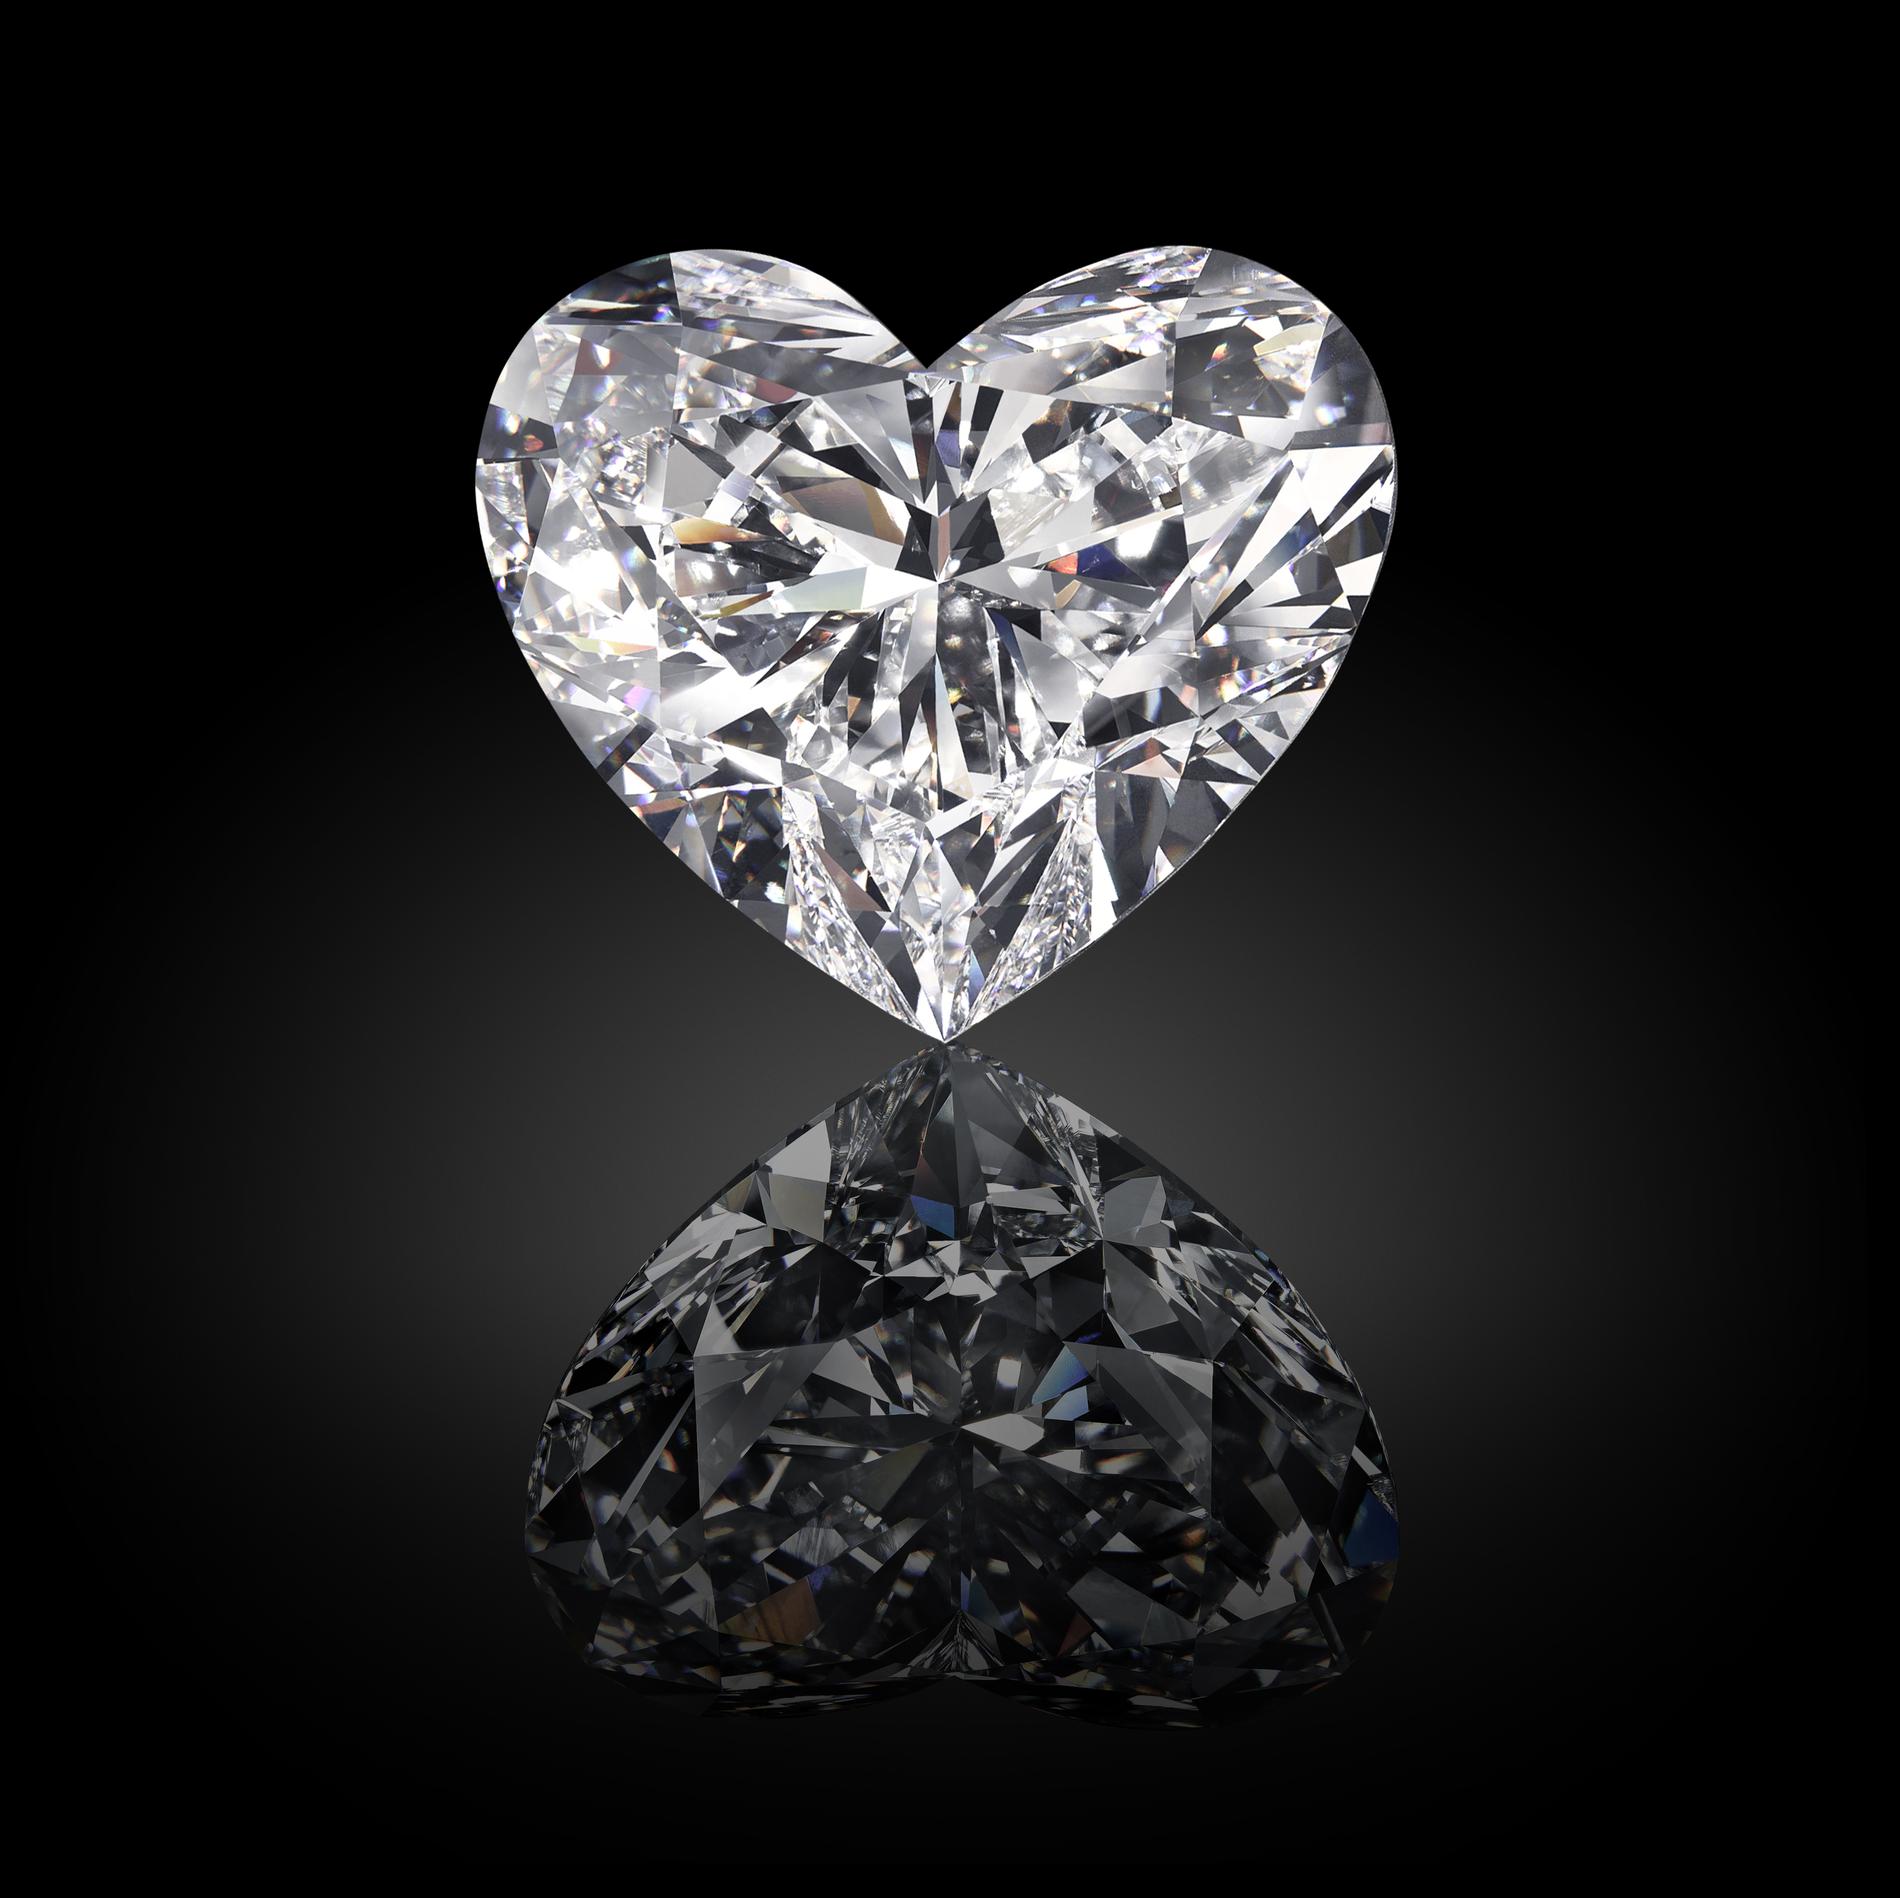 http://www.argaur.fr/wp-content/uploads/2016/11/venus-le-plus-gros-diamant-taille-coeur-au-monde-photo-4.jpg